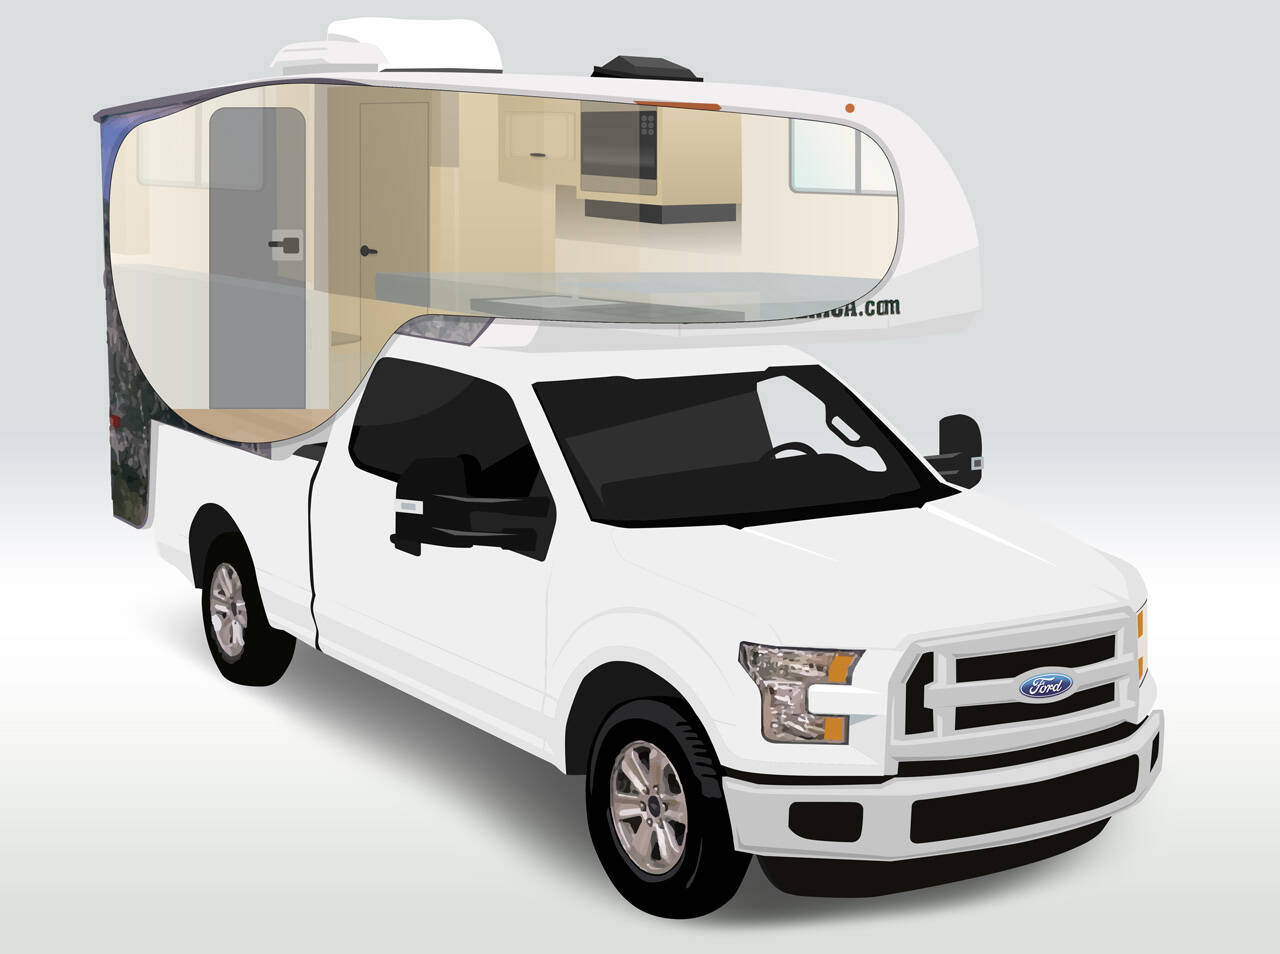 cruise america truck camper for sale